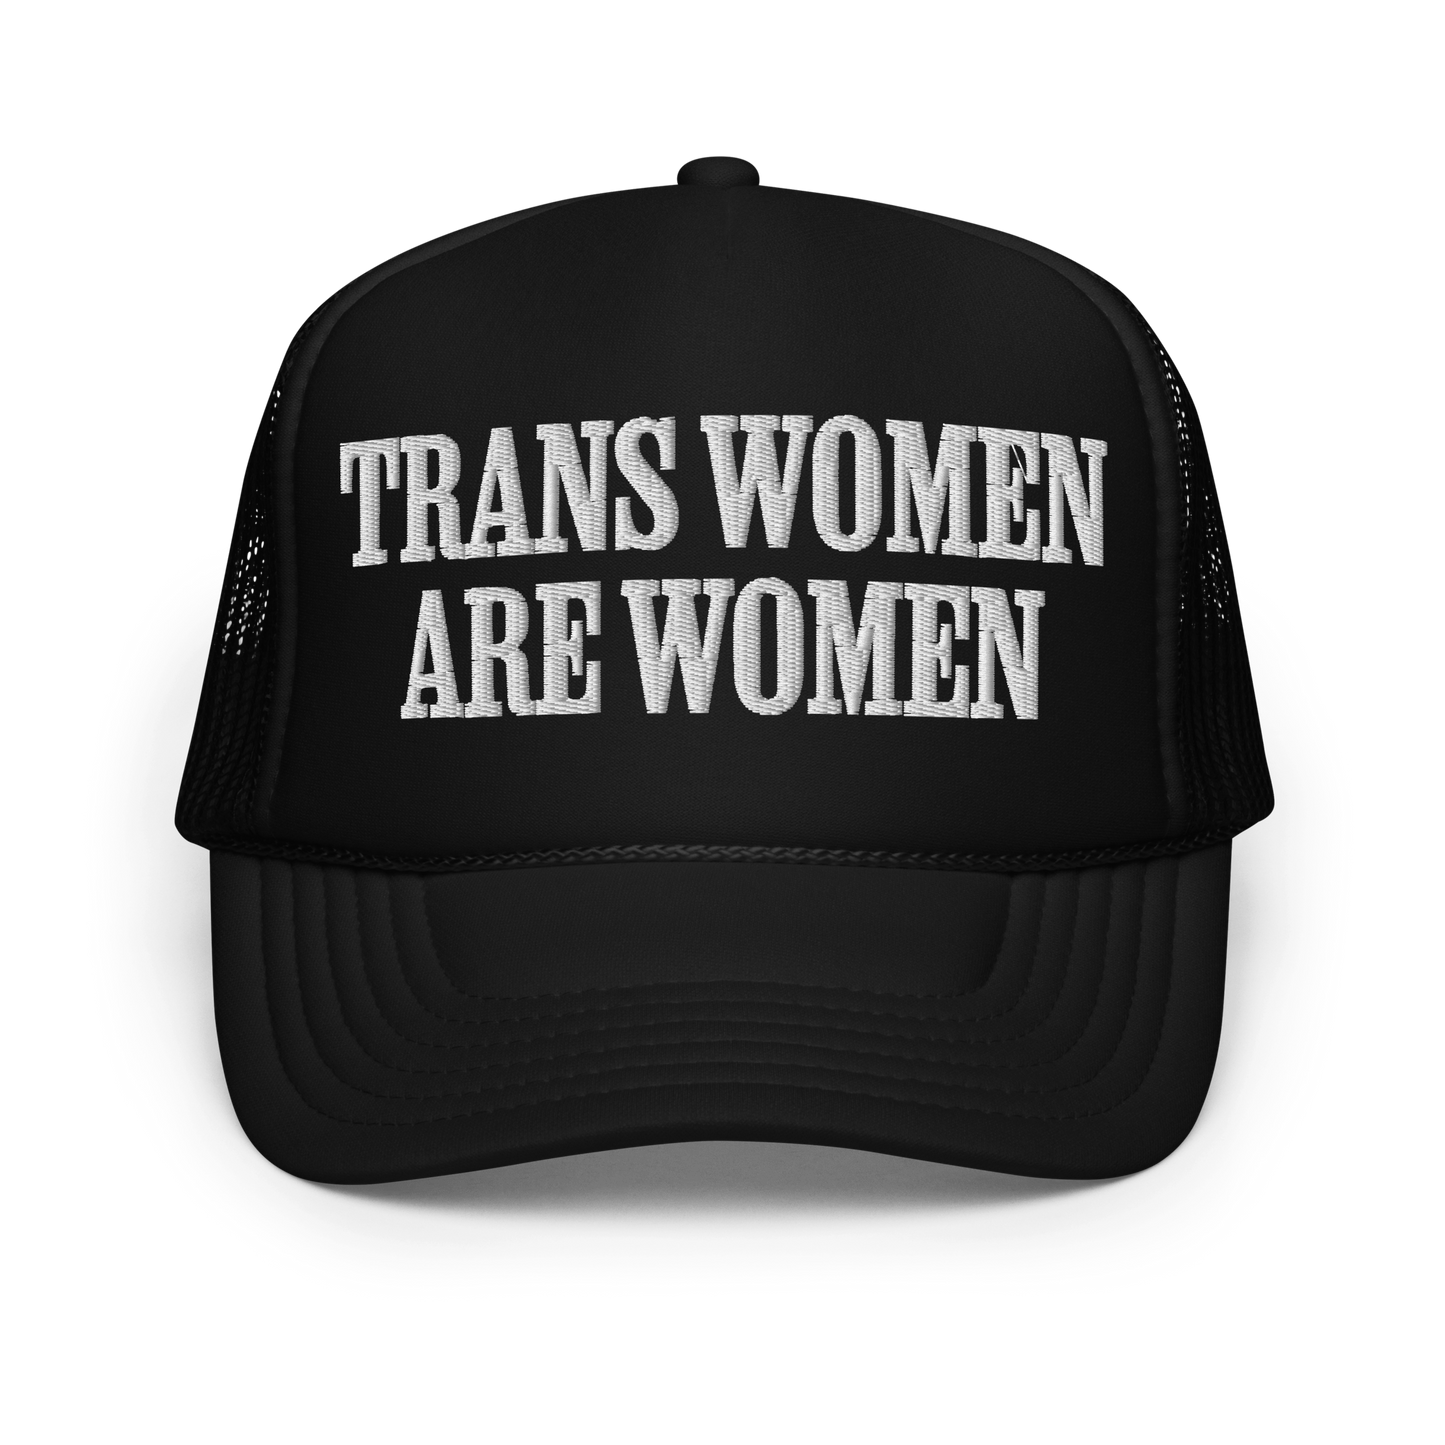 TRANS WOMEN ARE WOMEN • UNISEX TRUCKER HAT